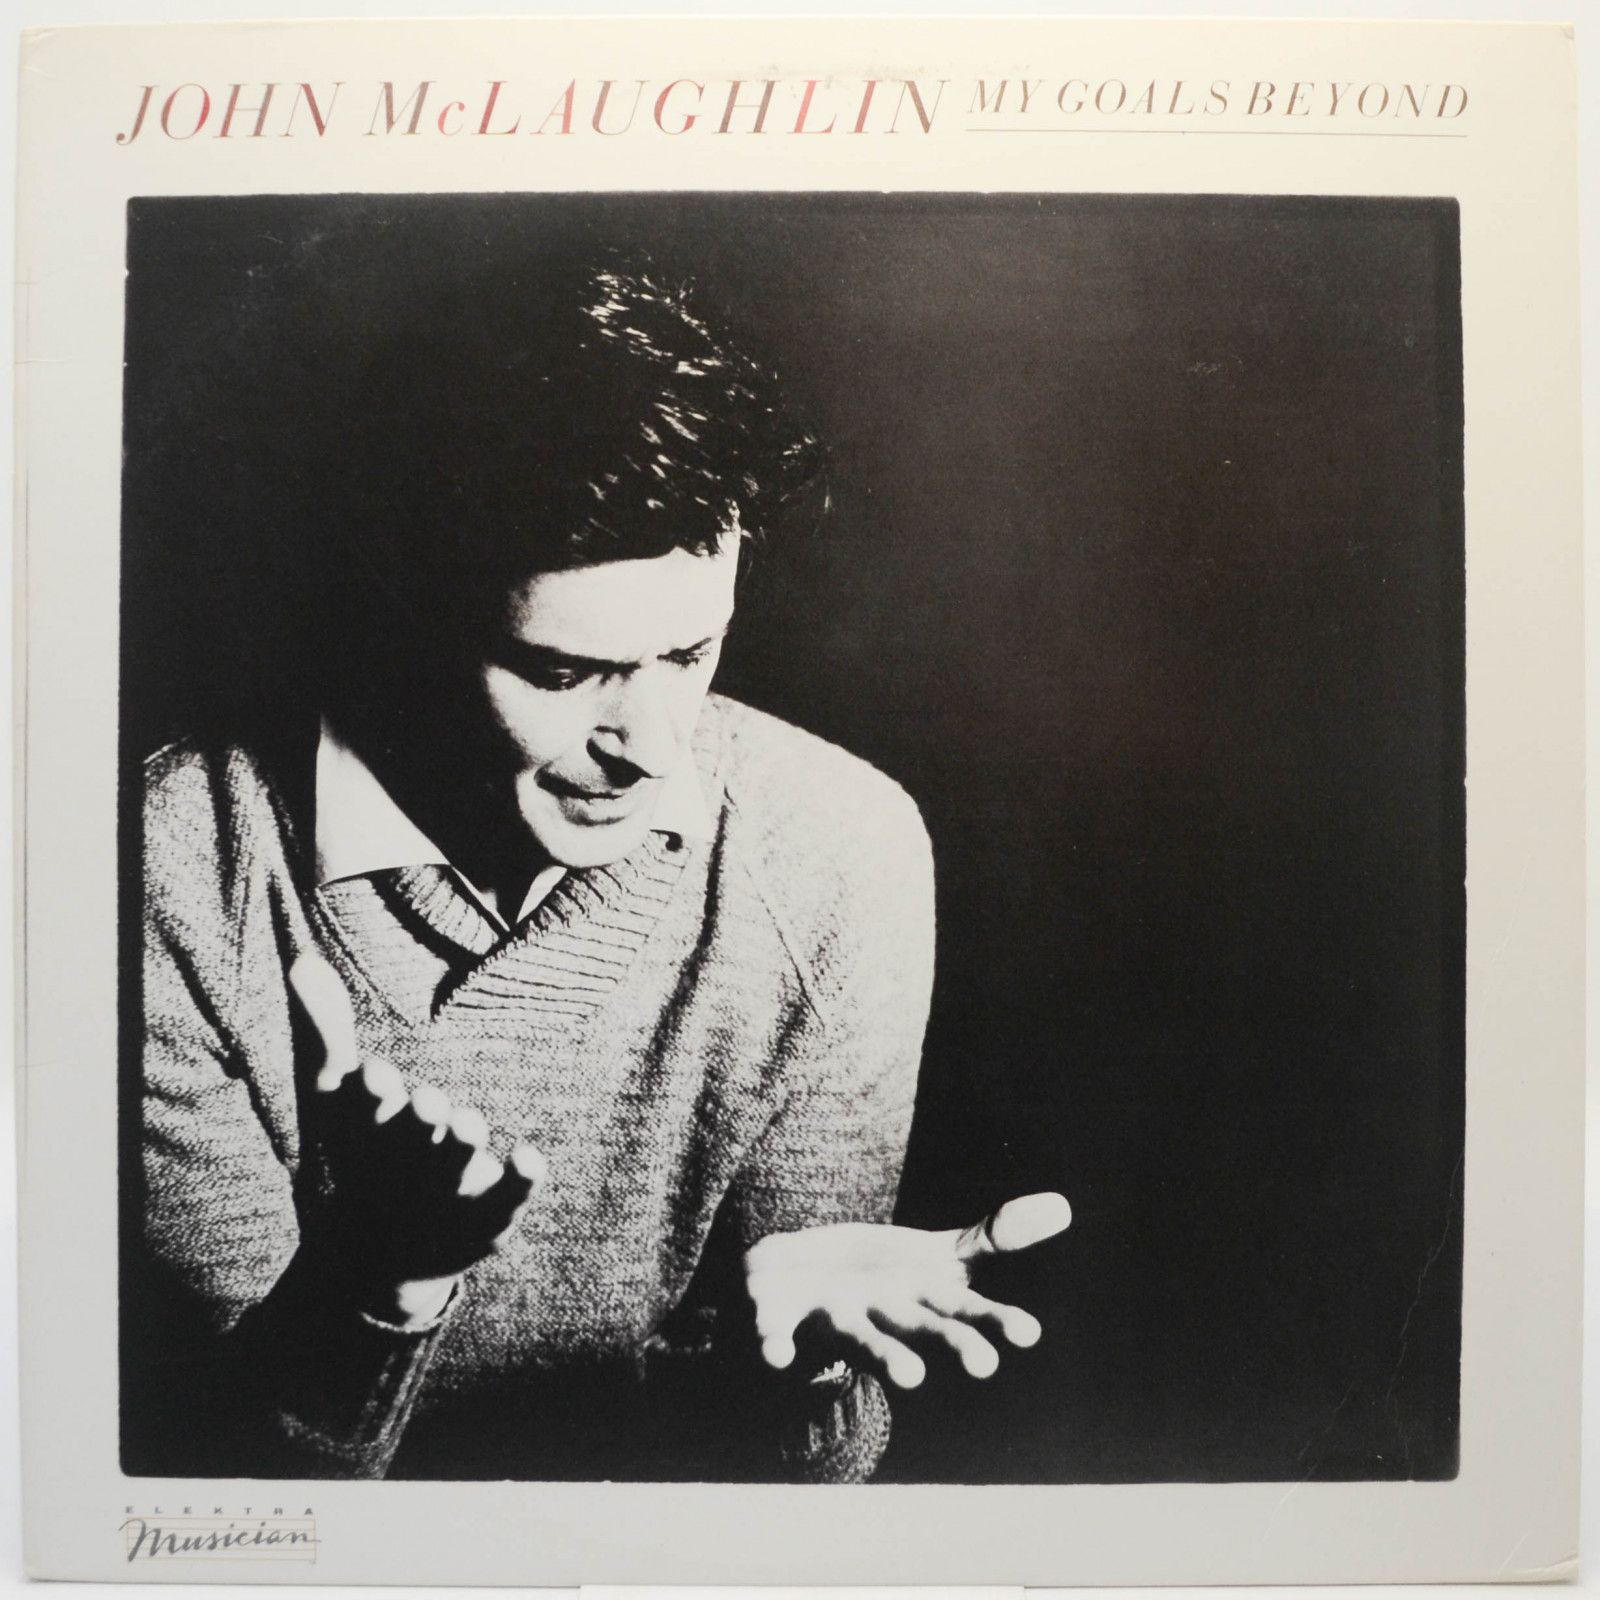 John McLaughlin — My Goals Beyond (USA), 1971